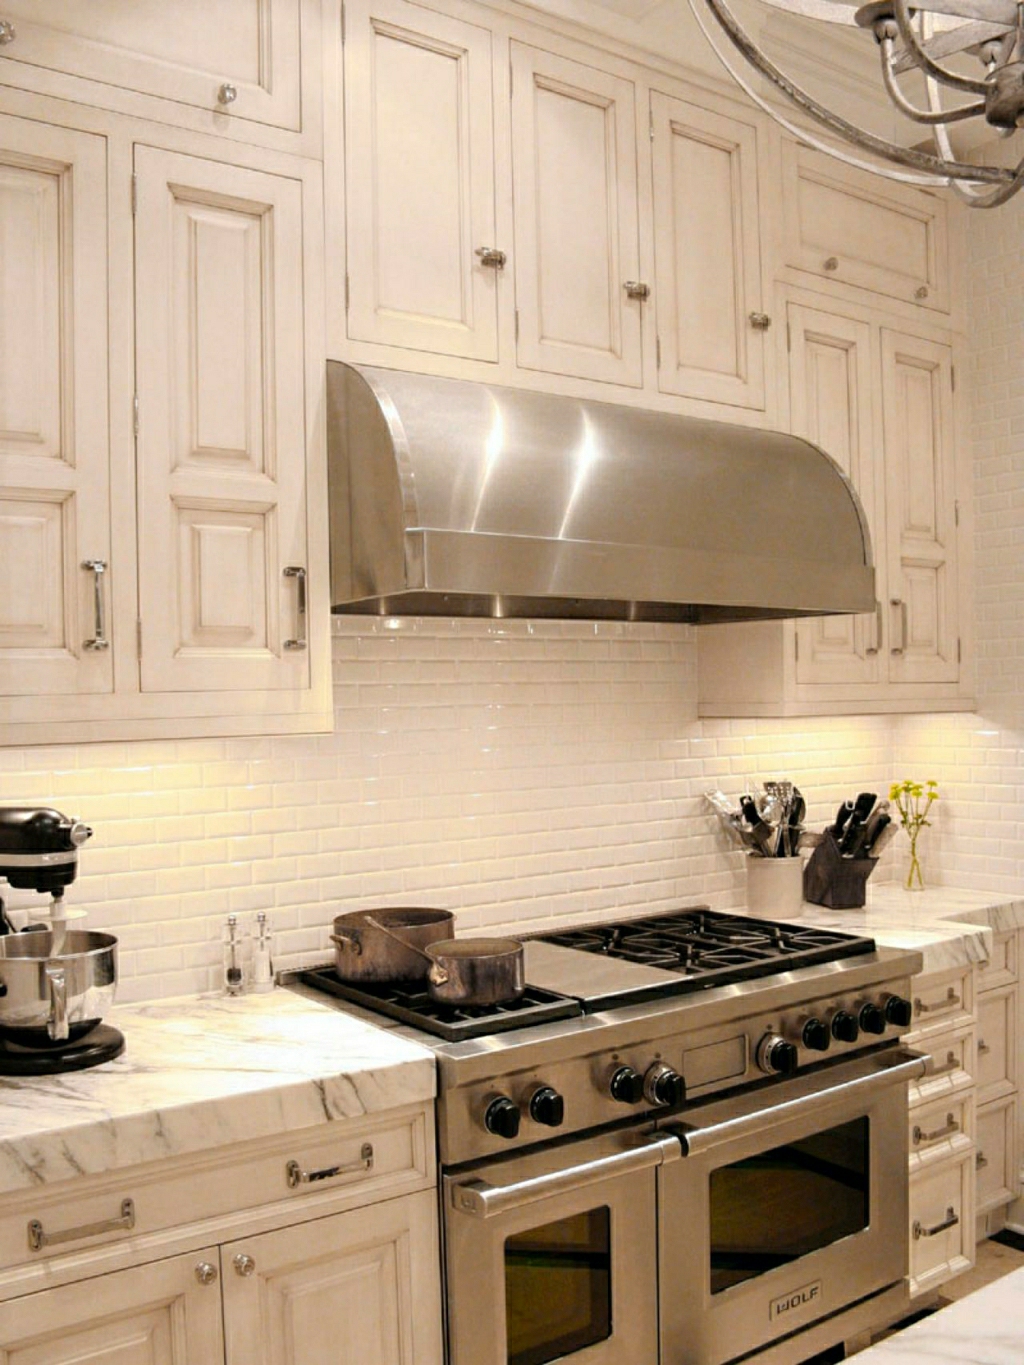 hood wall design hidden stainless kitchen design idea plate baking oven